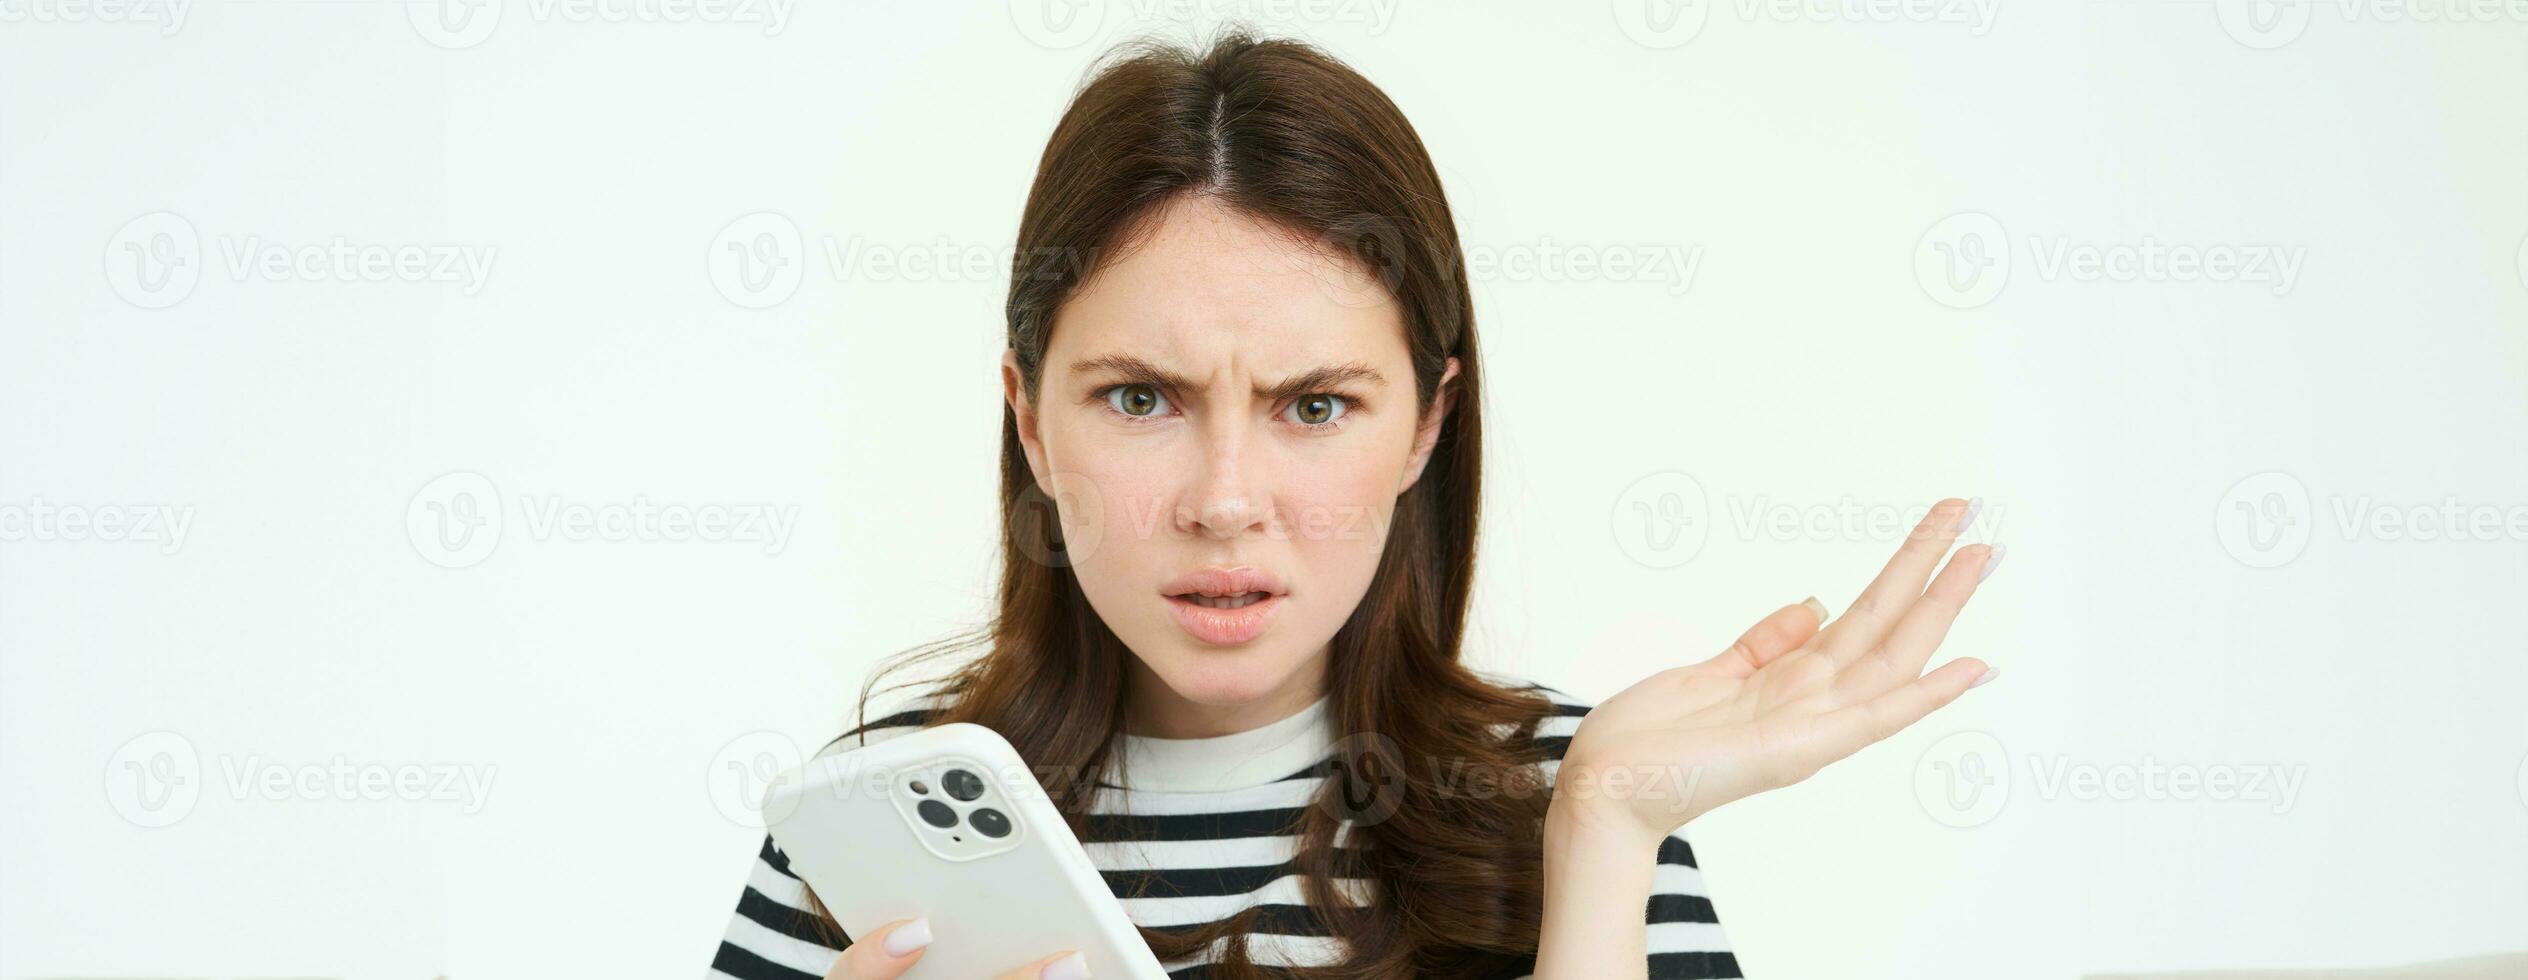 porträtt av förvirrad ung kvinna, utseende frustrerad, axelryckningar axlar, håll mobil telefon i ett hand, vit isolerat bakgrund foto